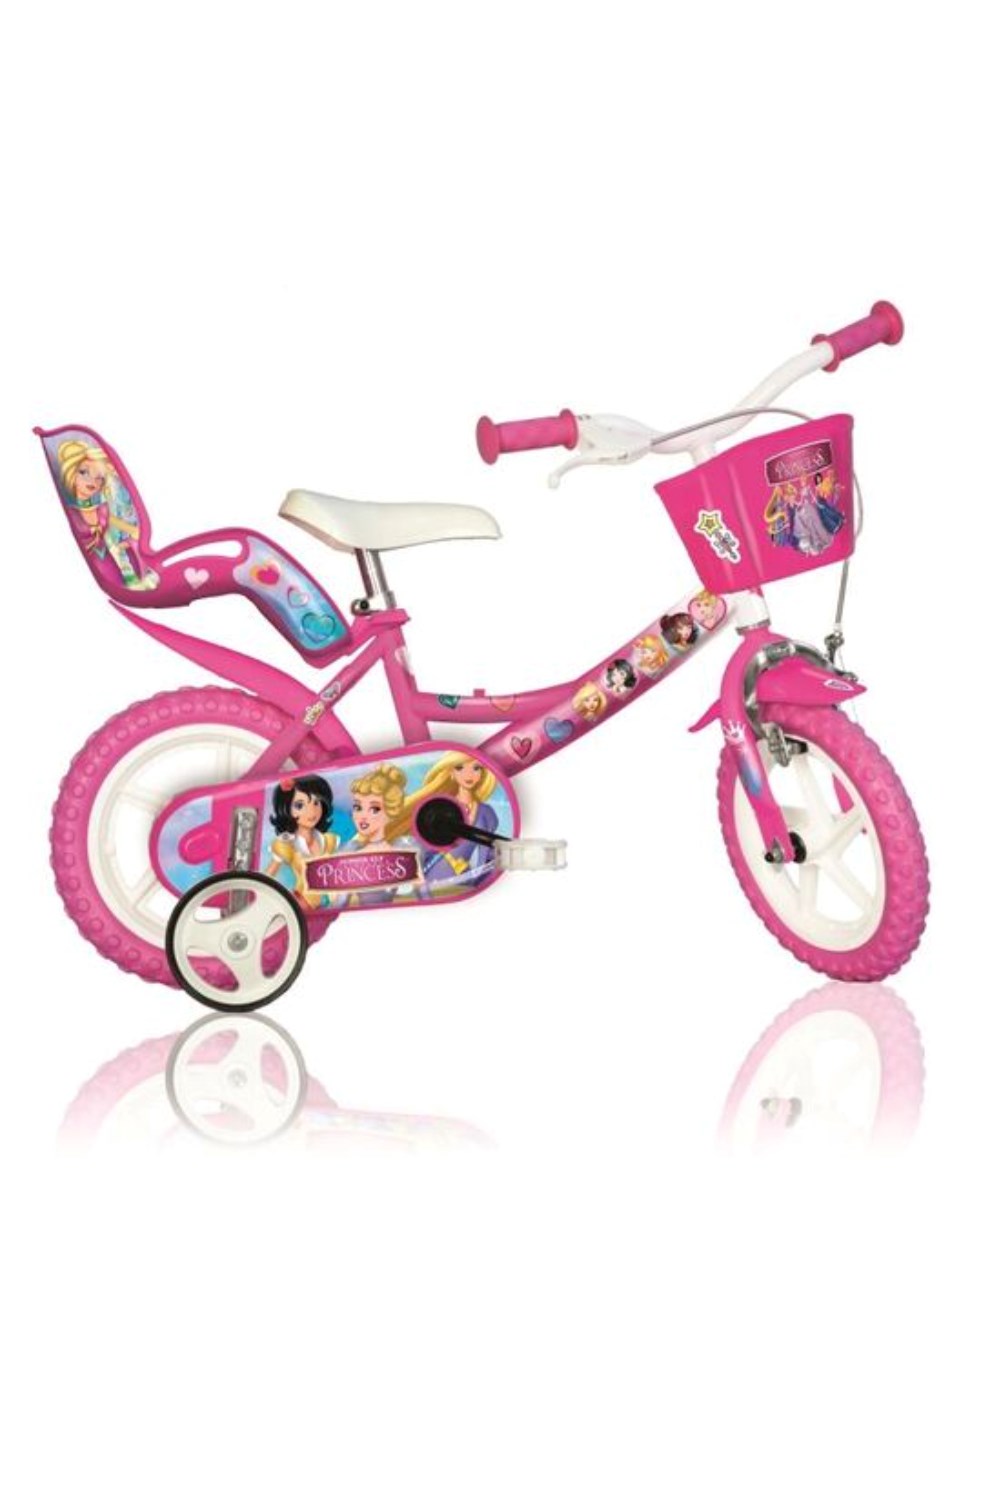 Princess 12" Kids Bike -